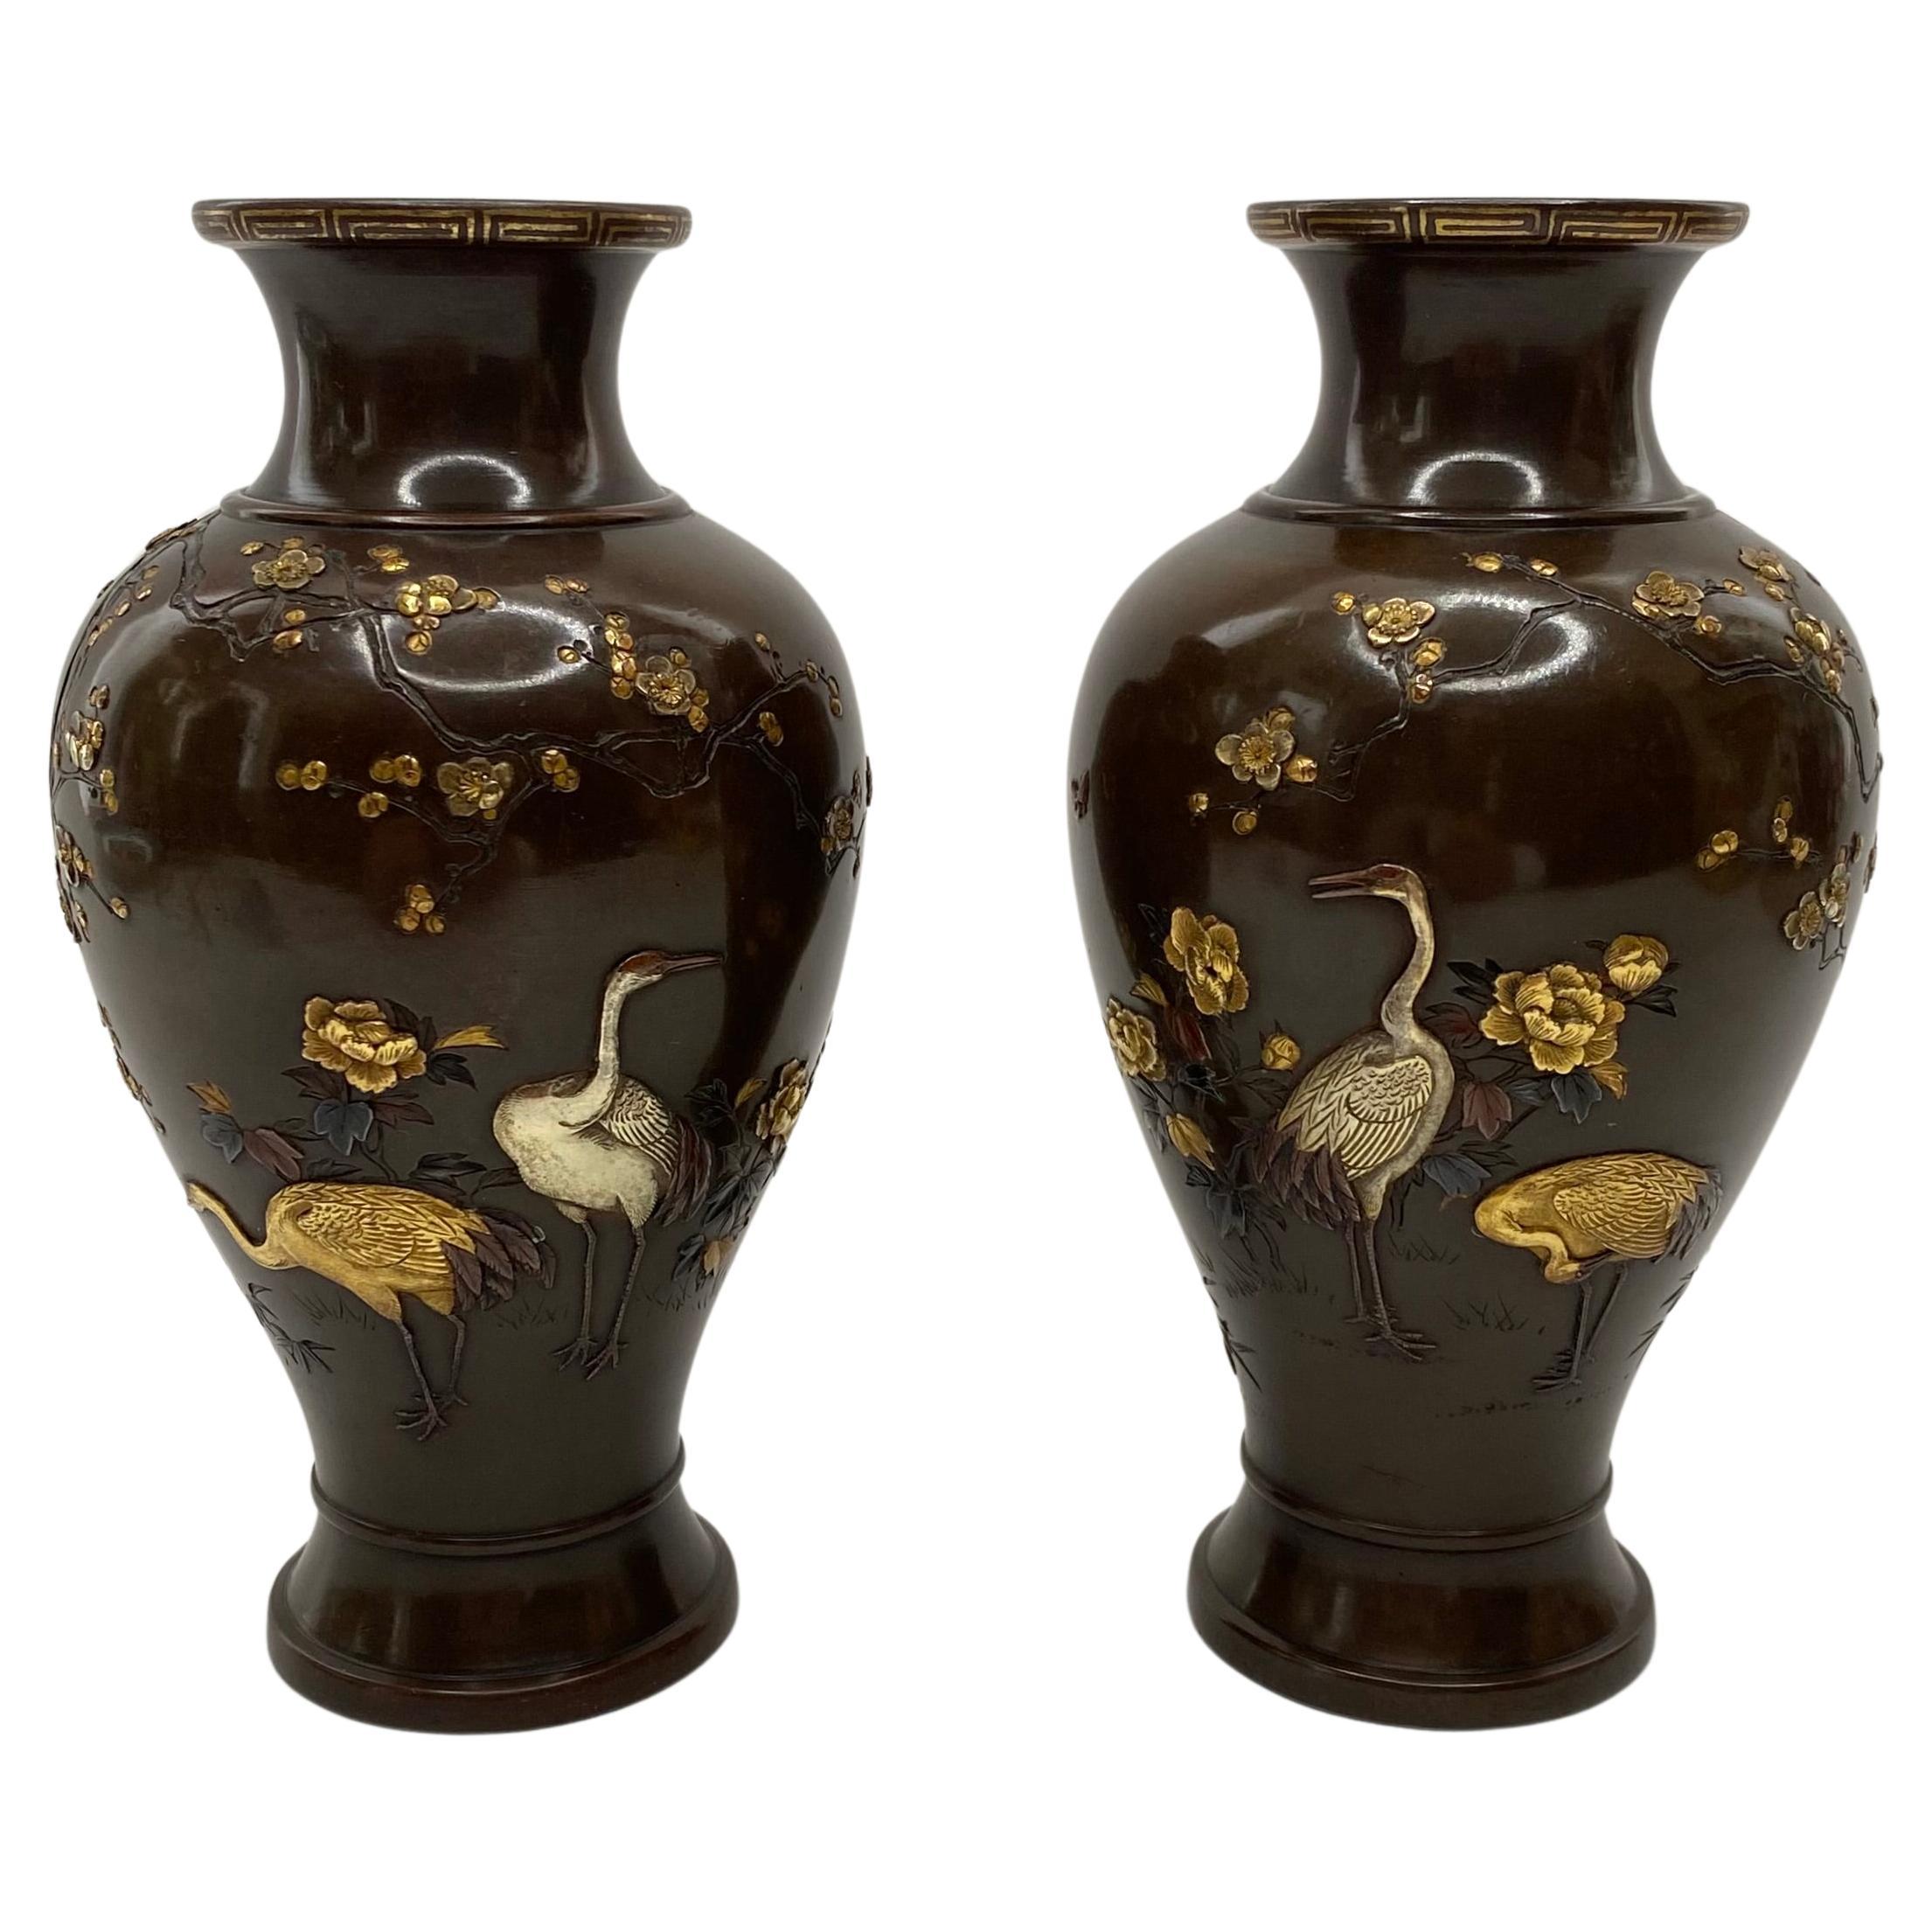 Japanische Vasen aus Bronze und gemischten Metallen, Inoue von Kyoto, Meiji-Periode.